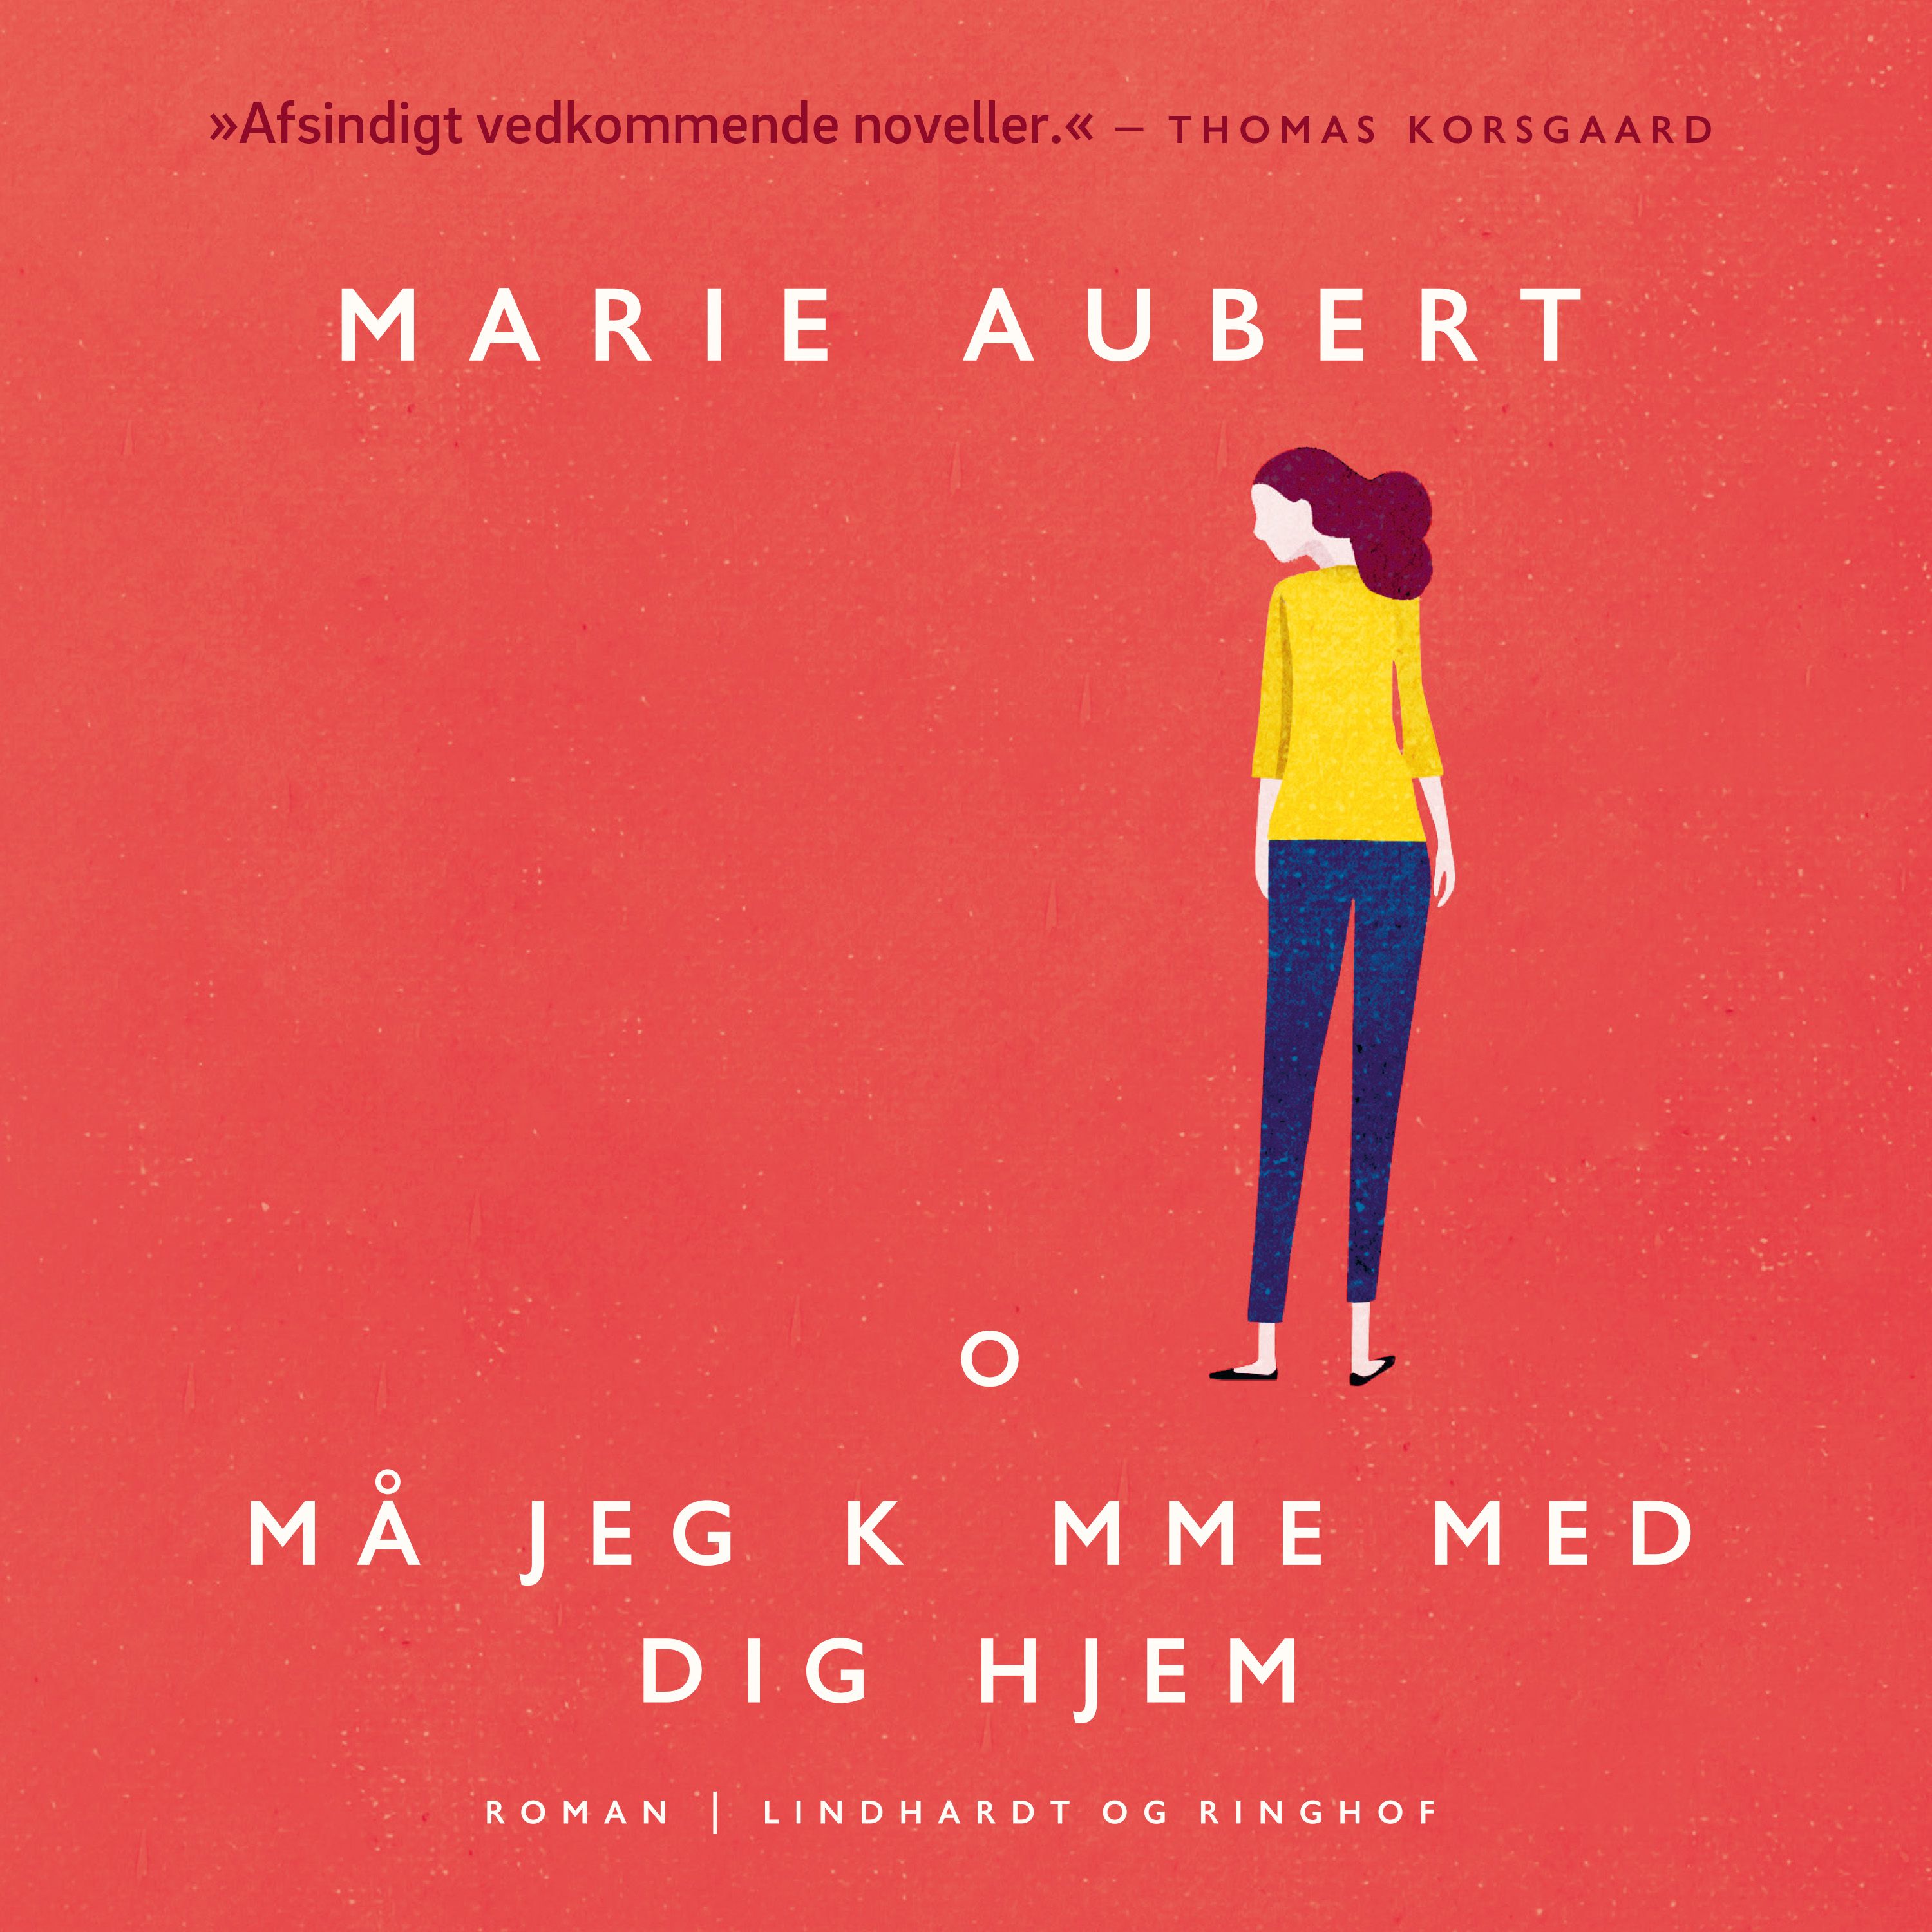 Må jeg komme med dig hjem, ljudbok av Marie Aubert